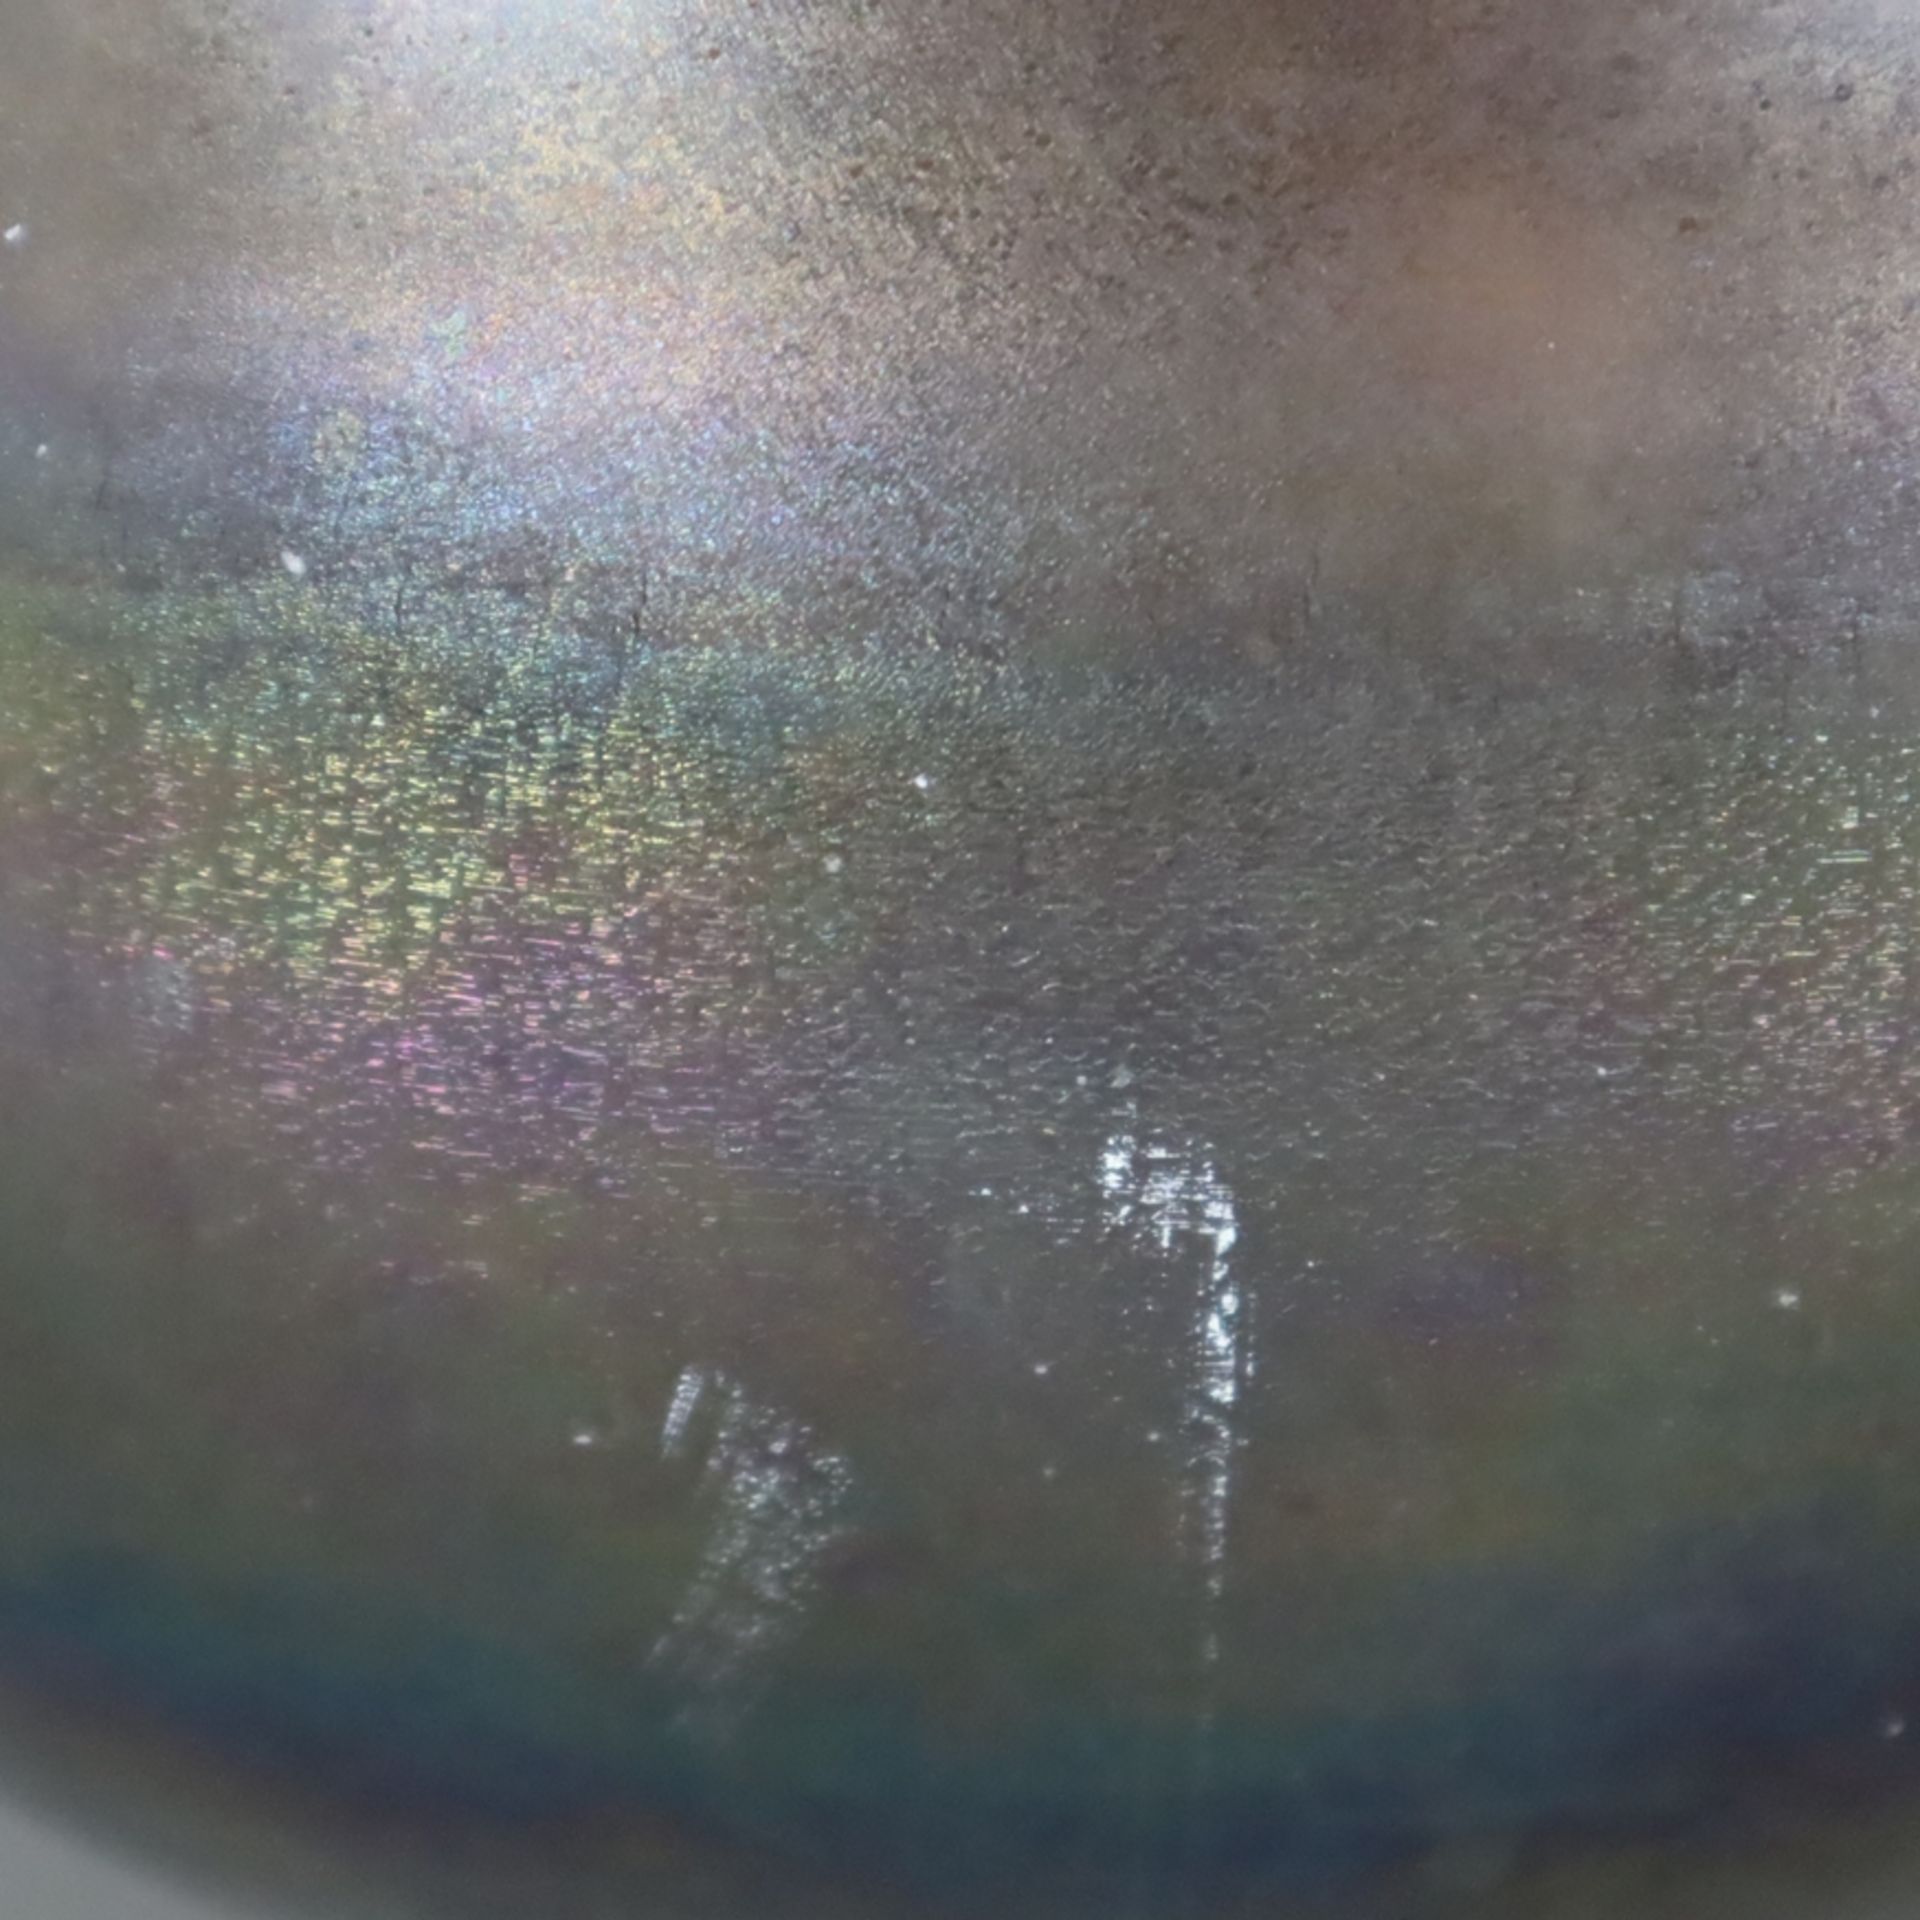 Jugendstil-Blumentopf - irisiertes Glas, bauchige Form, ausgeschliffener Bodenabriss, Gebrauchsspur - Bild 4 aus 7